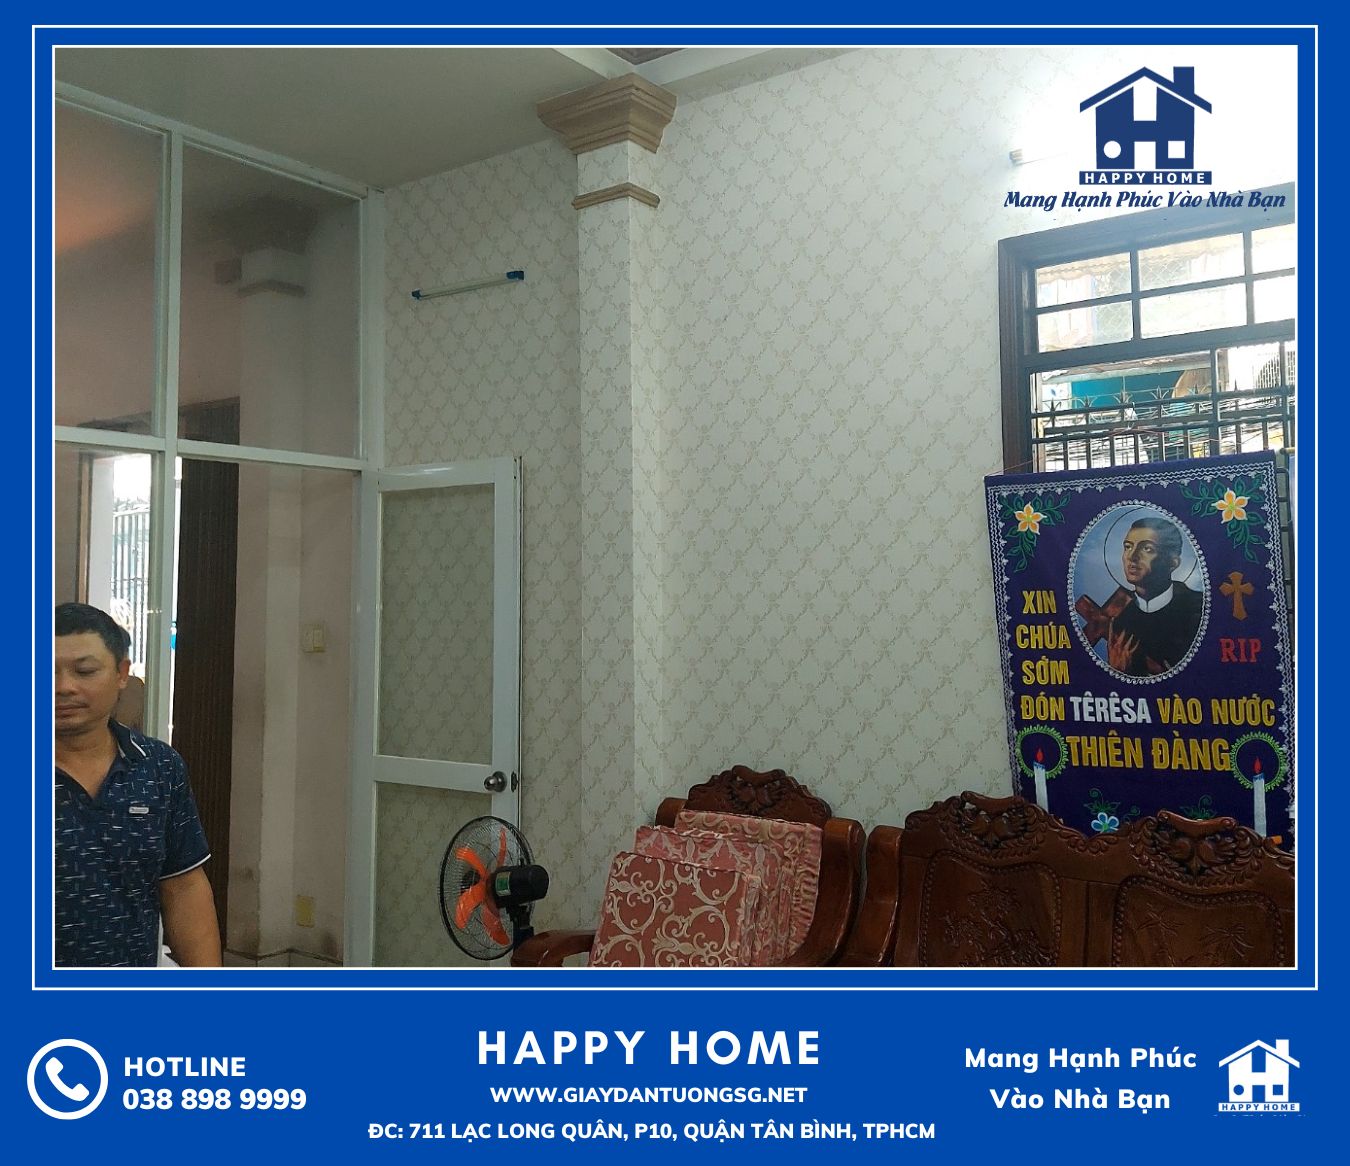 Khách hàng lựa chọn Happy Home để cung cấp và thi công làm đẹp cho căn hộ gia đình